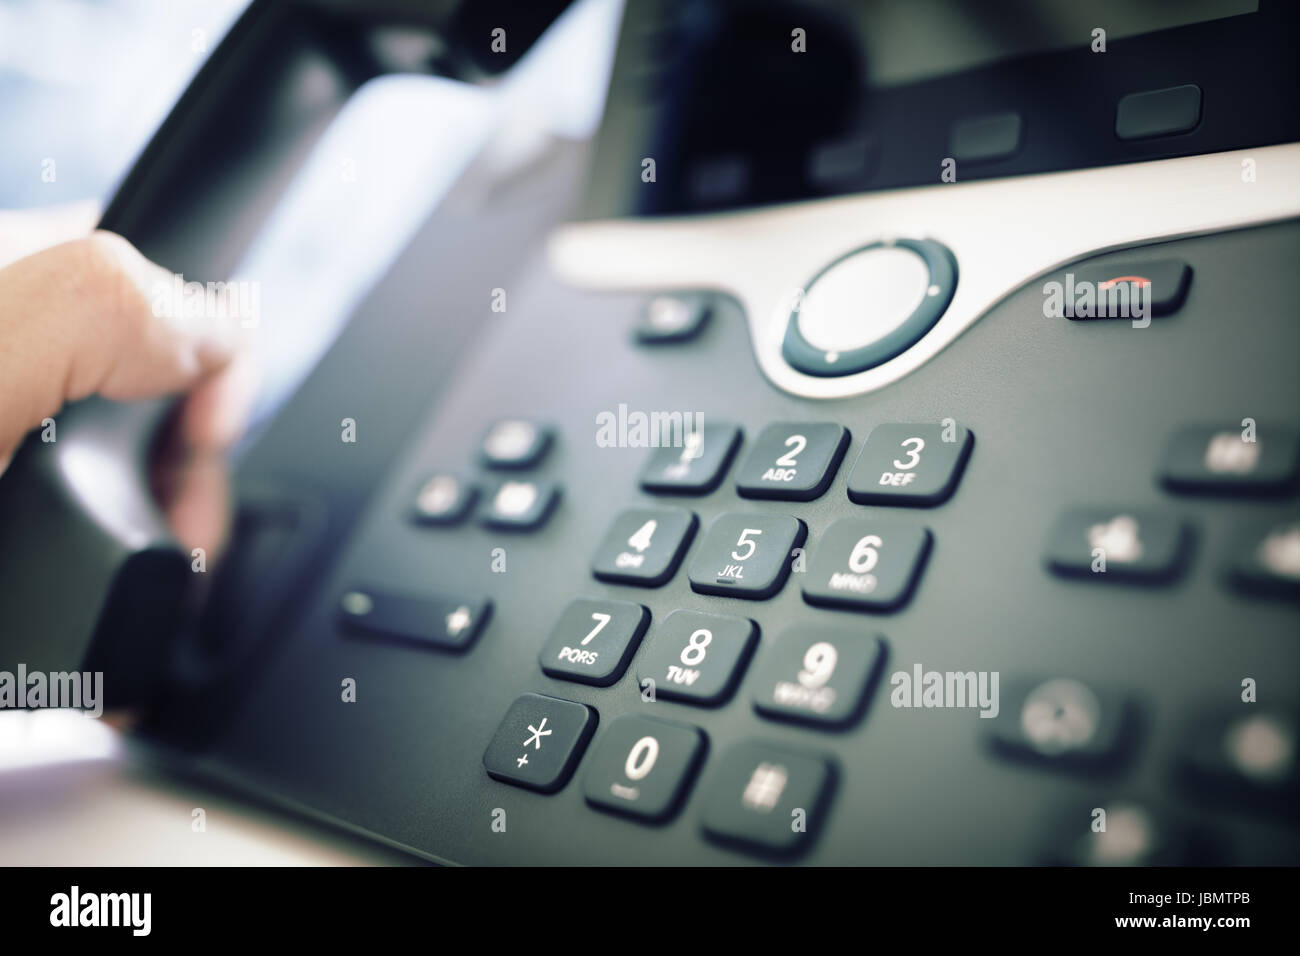 Clavier téléphonique composition concept pour la communication, contactez-nous et le service clientèle assistance Banque D'Images